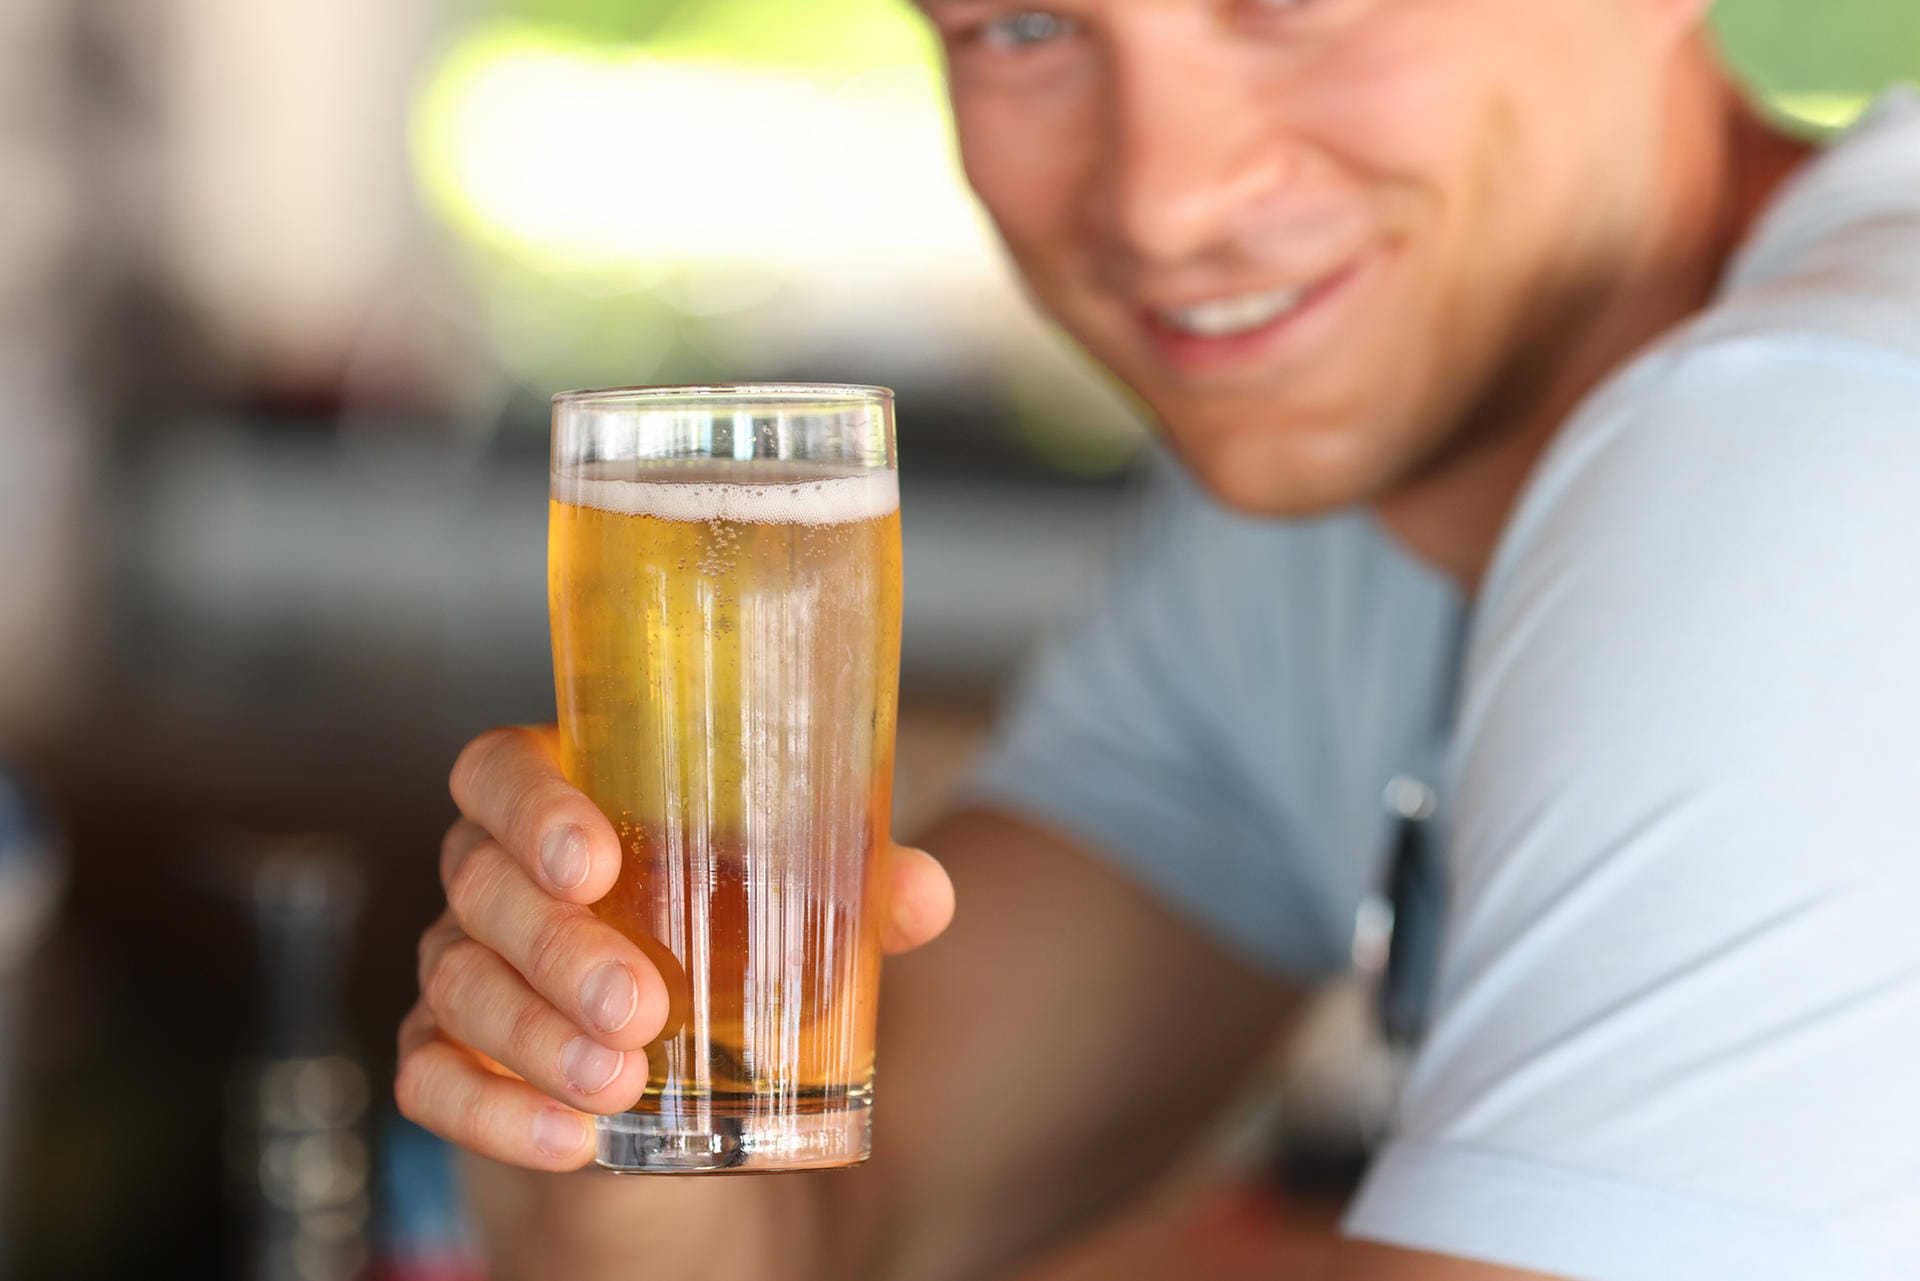 Auch zum alkoholfreien Bier, das ungefähr so kalorienreich wie eine Saftschorle ist, können Sie hin und wieder greifen – zum Beispiel nach dem Sport. Denn es versorgt den Sporttreibenden mit Flüssigkeit, Elektrolyten und Energie.